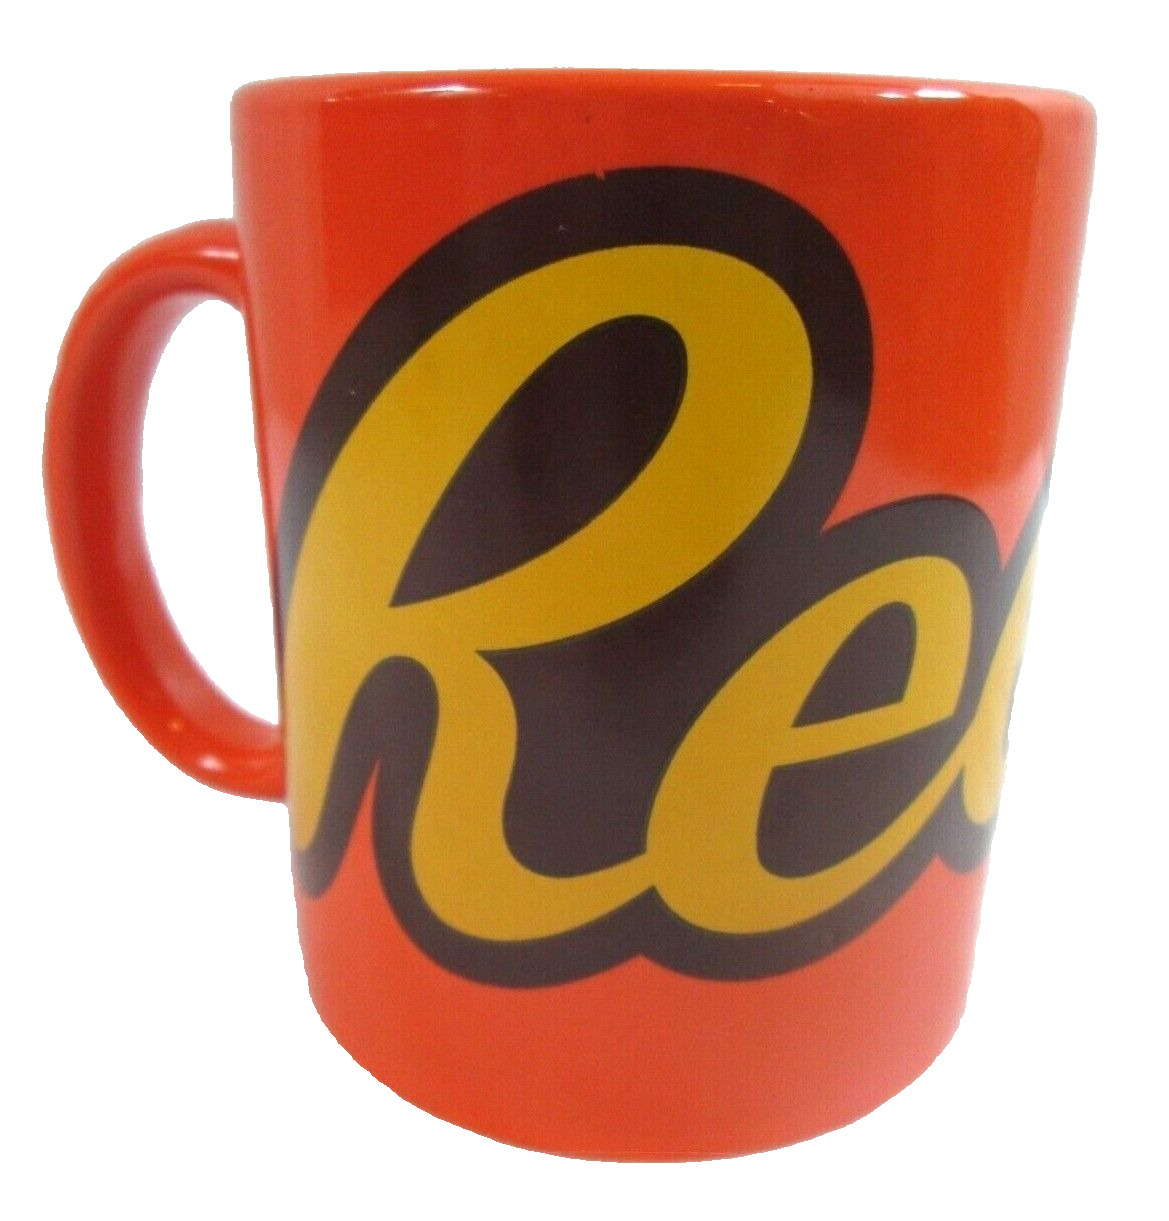 Galerie Reese\'s Coffee Mug Bright Orange 12 oz Ceramic Tea